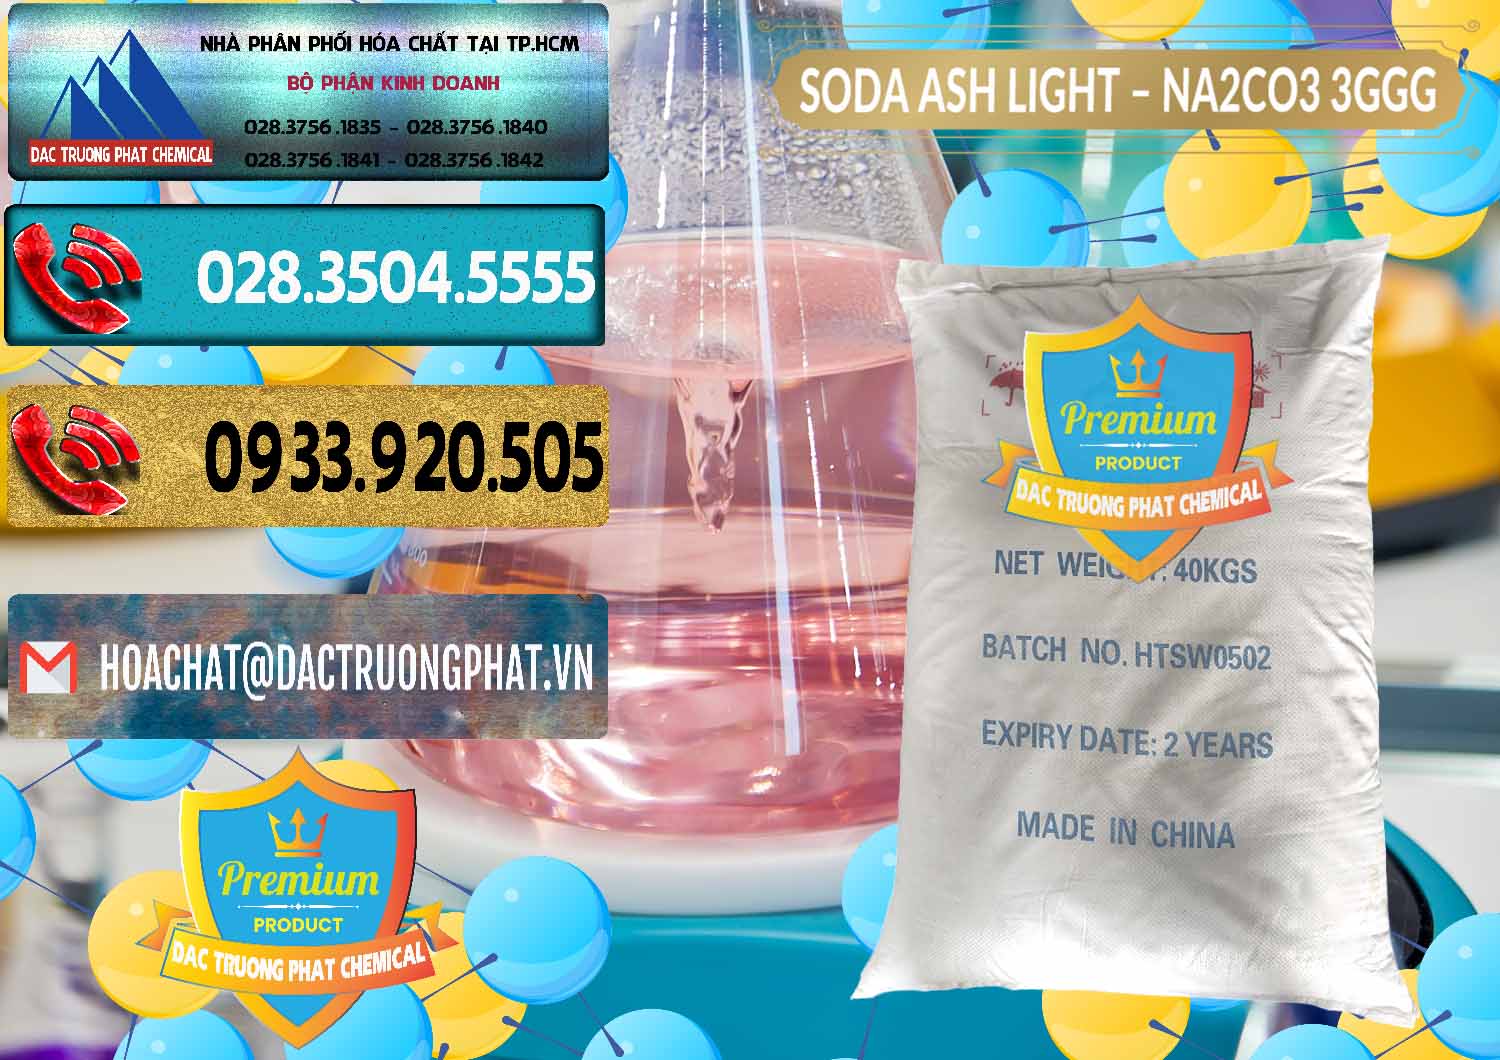 Nhà cung cấp ( bán ) Soda Ash Light - NA2CO3 3GGG Trung Quốc China - 0124 - Công ty phân phối ( cung cấp ) hóa chất tại TP.HCM - hoachatdetnhuom.com